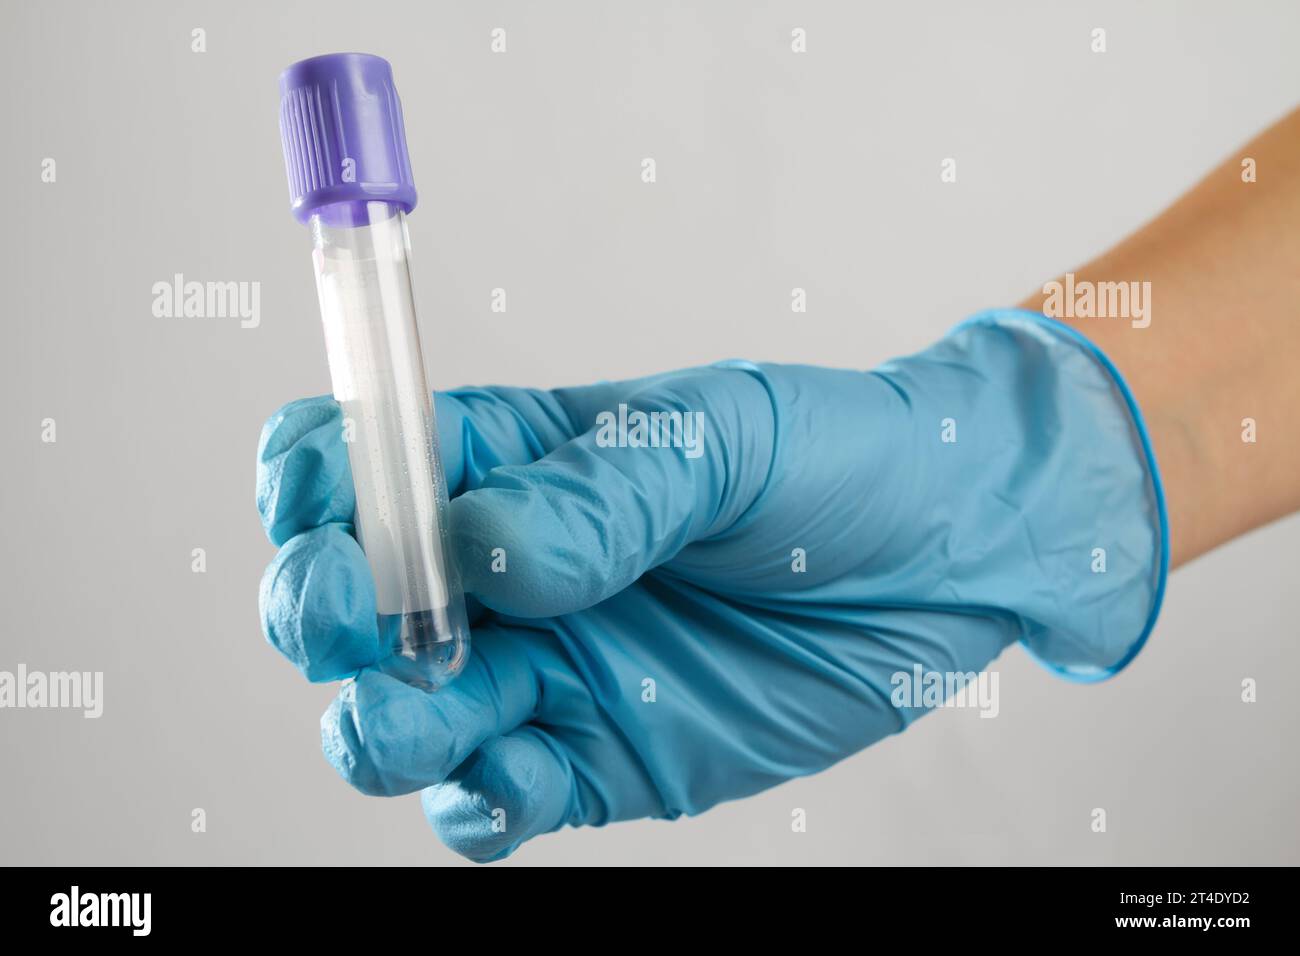 la main d'un expert médical dans un gant stérile tient une éprouvette de sang bleu propre Banque D'Images